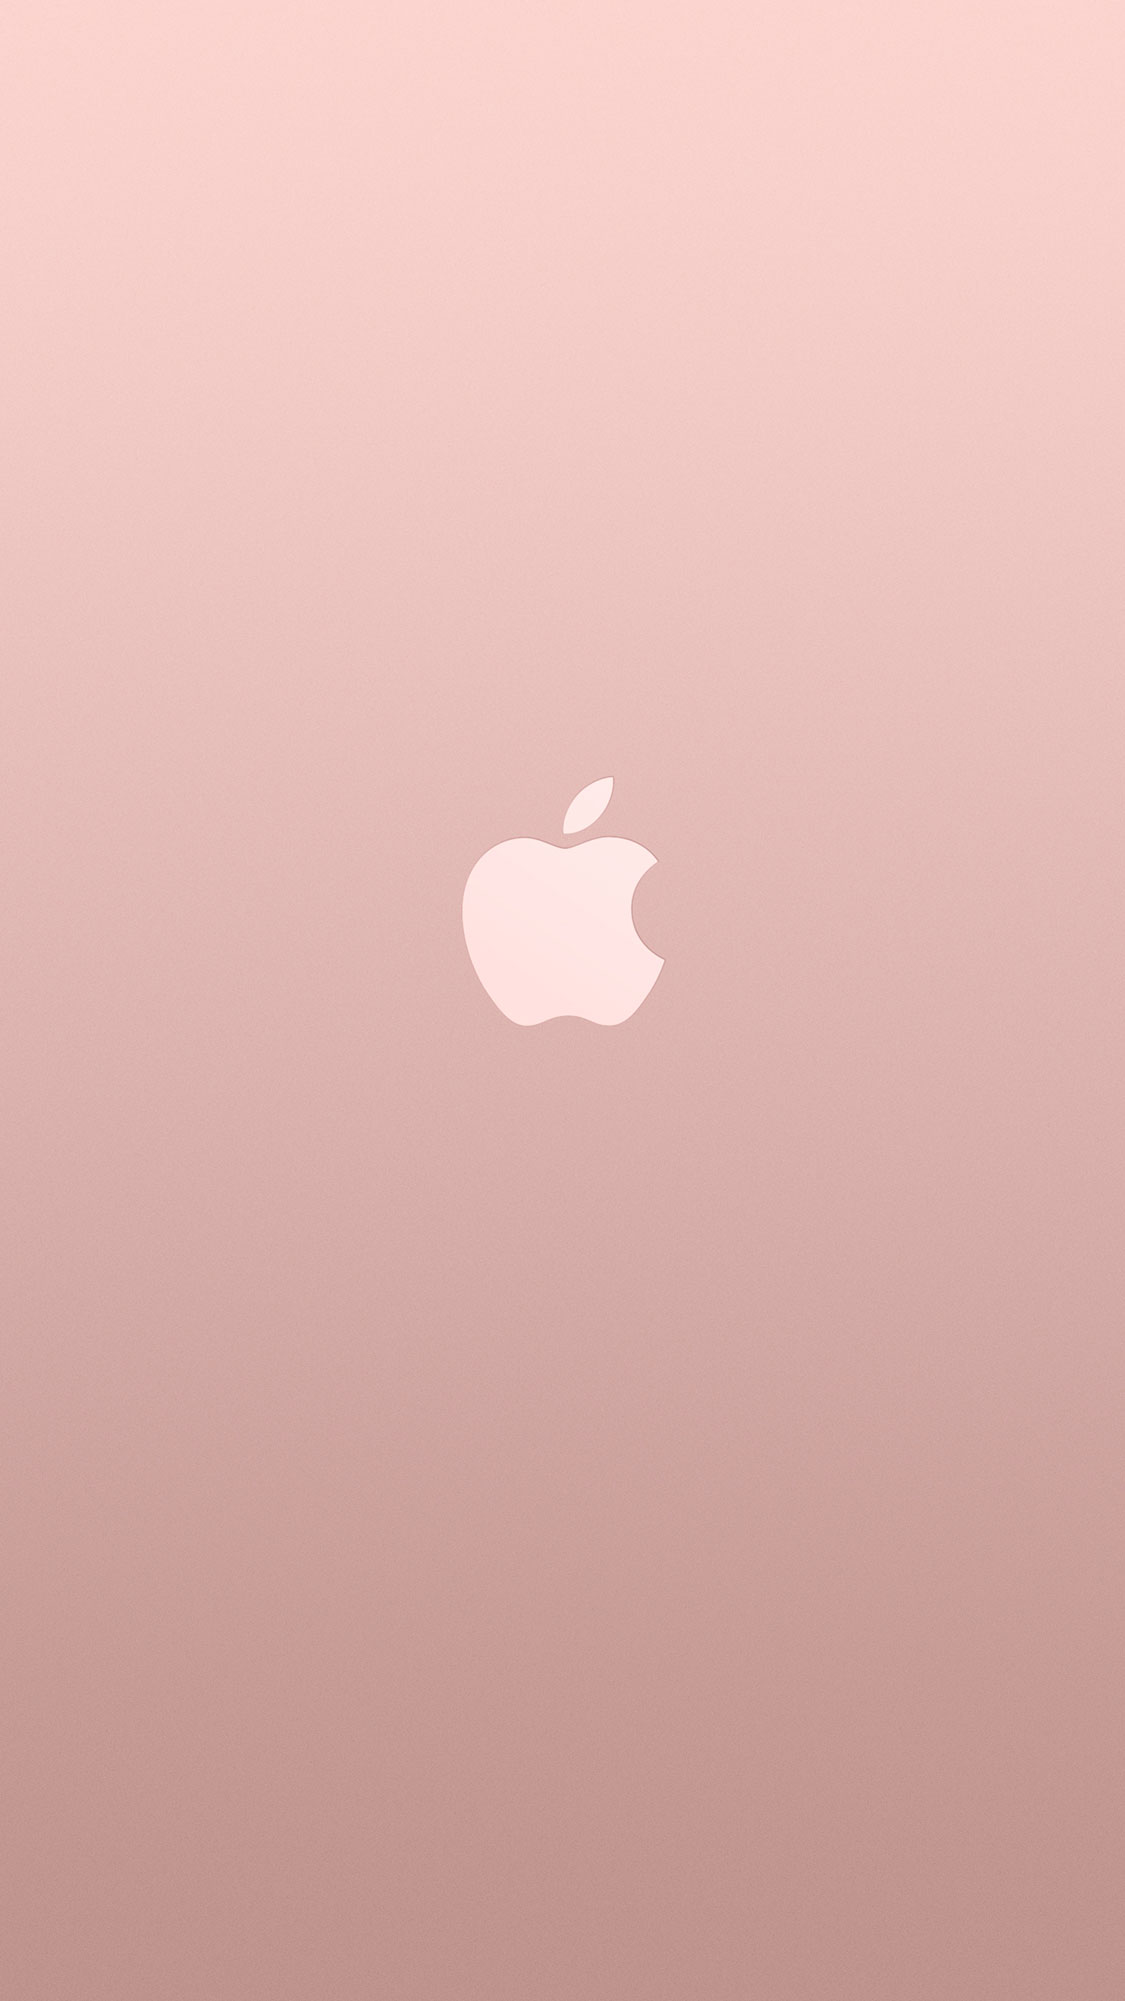 49+] iPhone 6s Rose Gold Wallpaper - WallpaperSafari